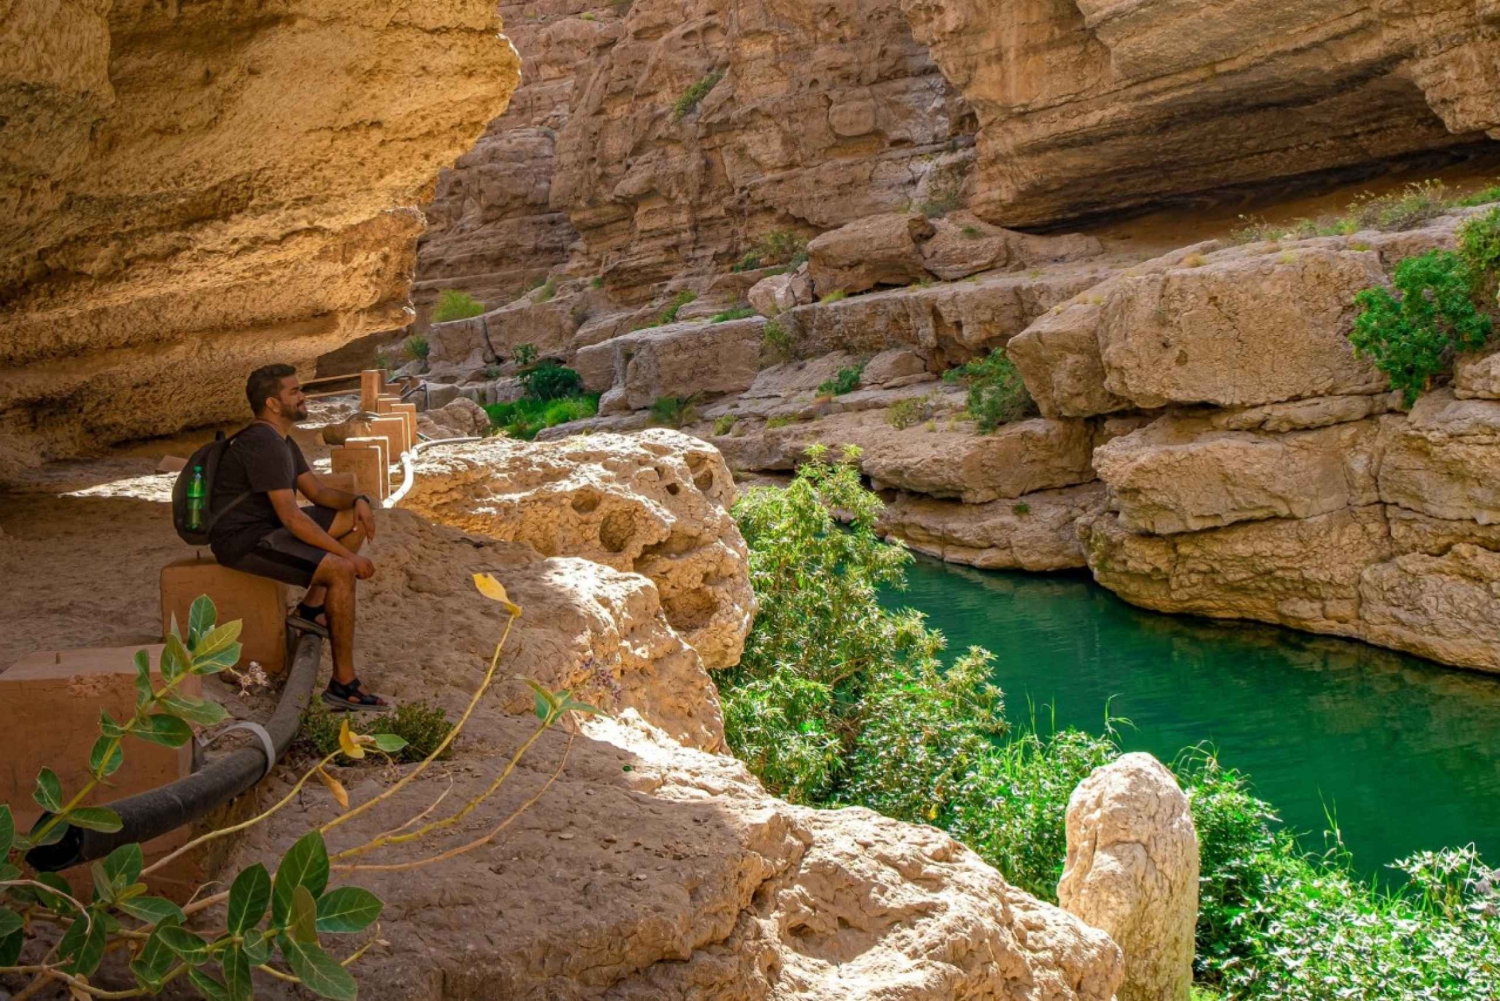 Muscat: Wadi Shab and Bimmah Sinkhole - Full Day Tour